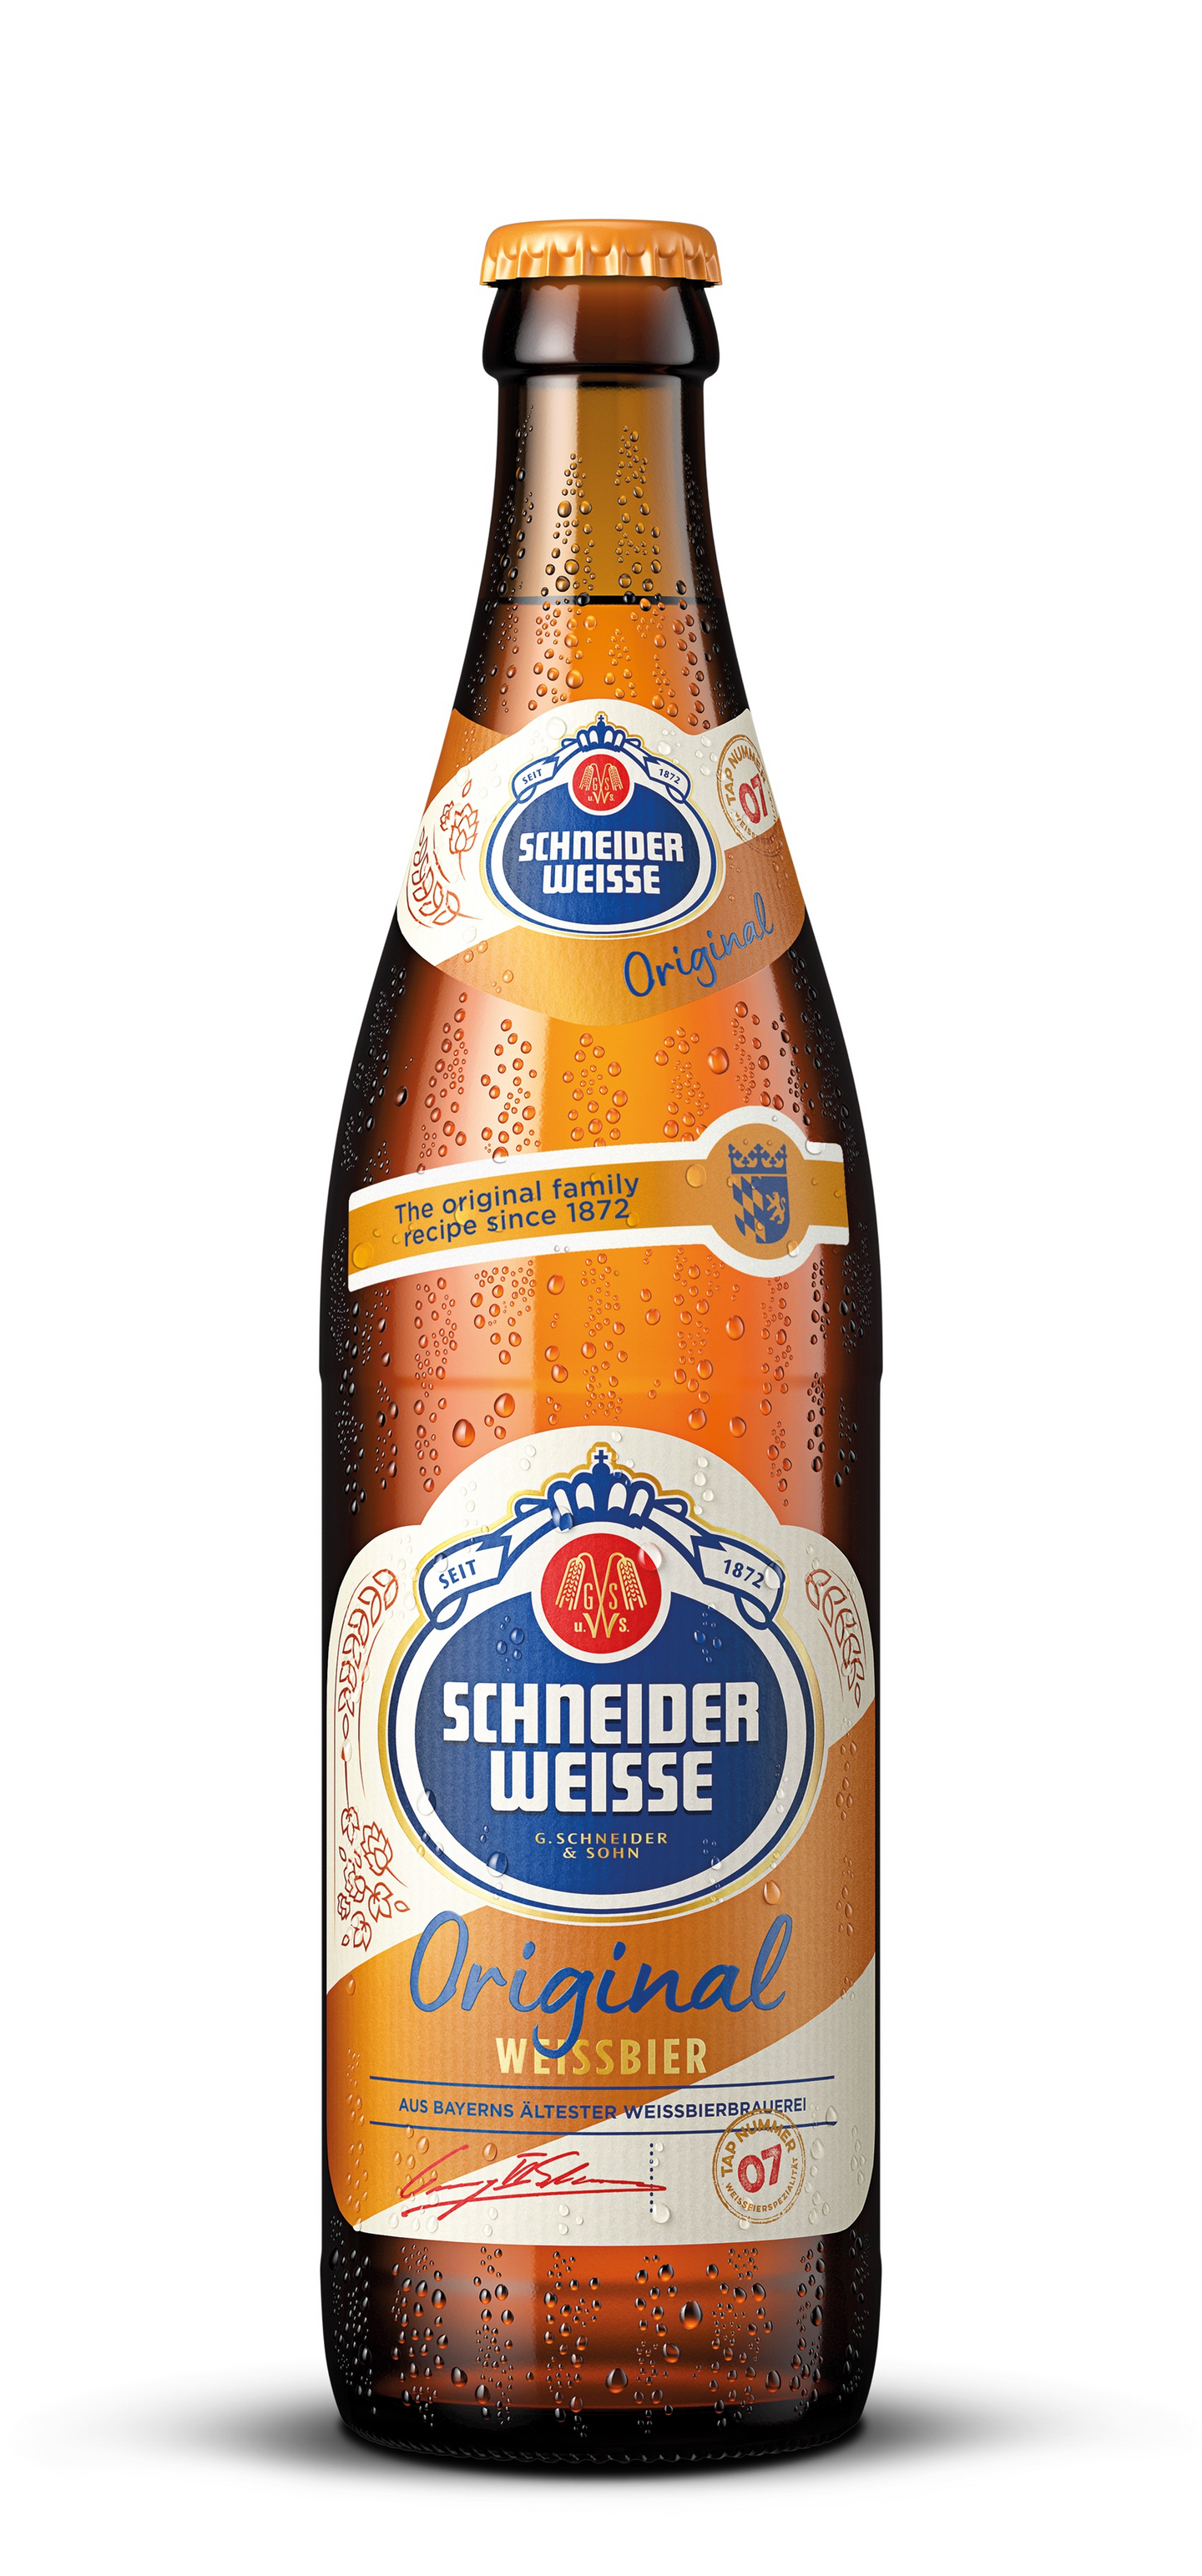 Schneider Original weisse olut 5,4% 0,5l